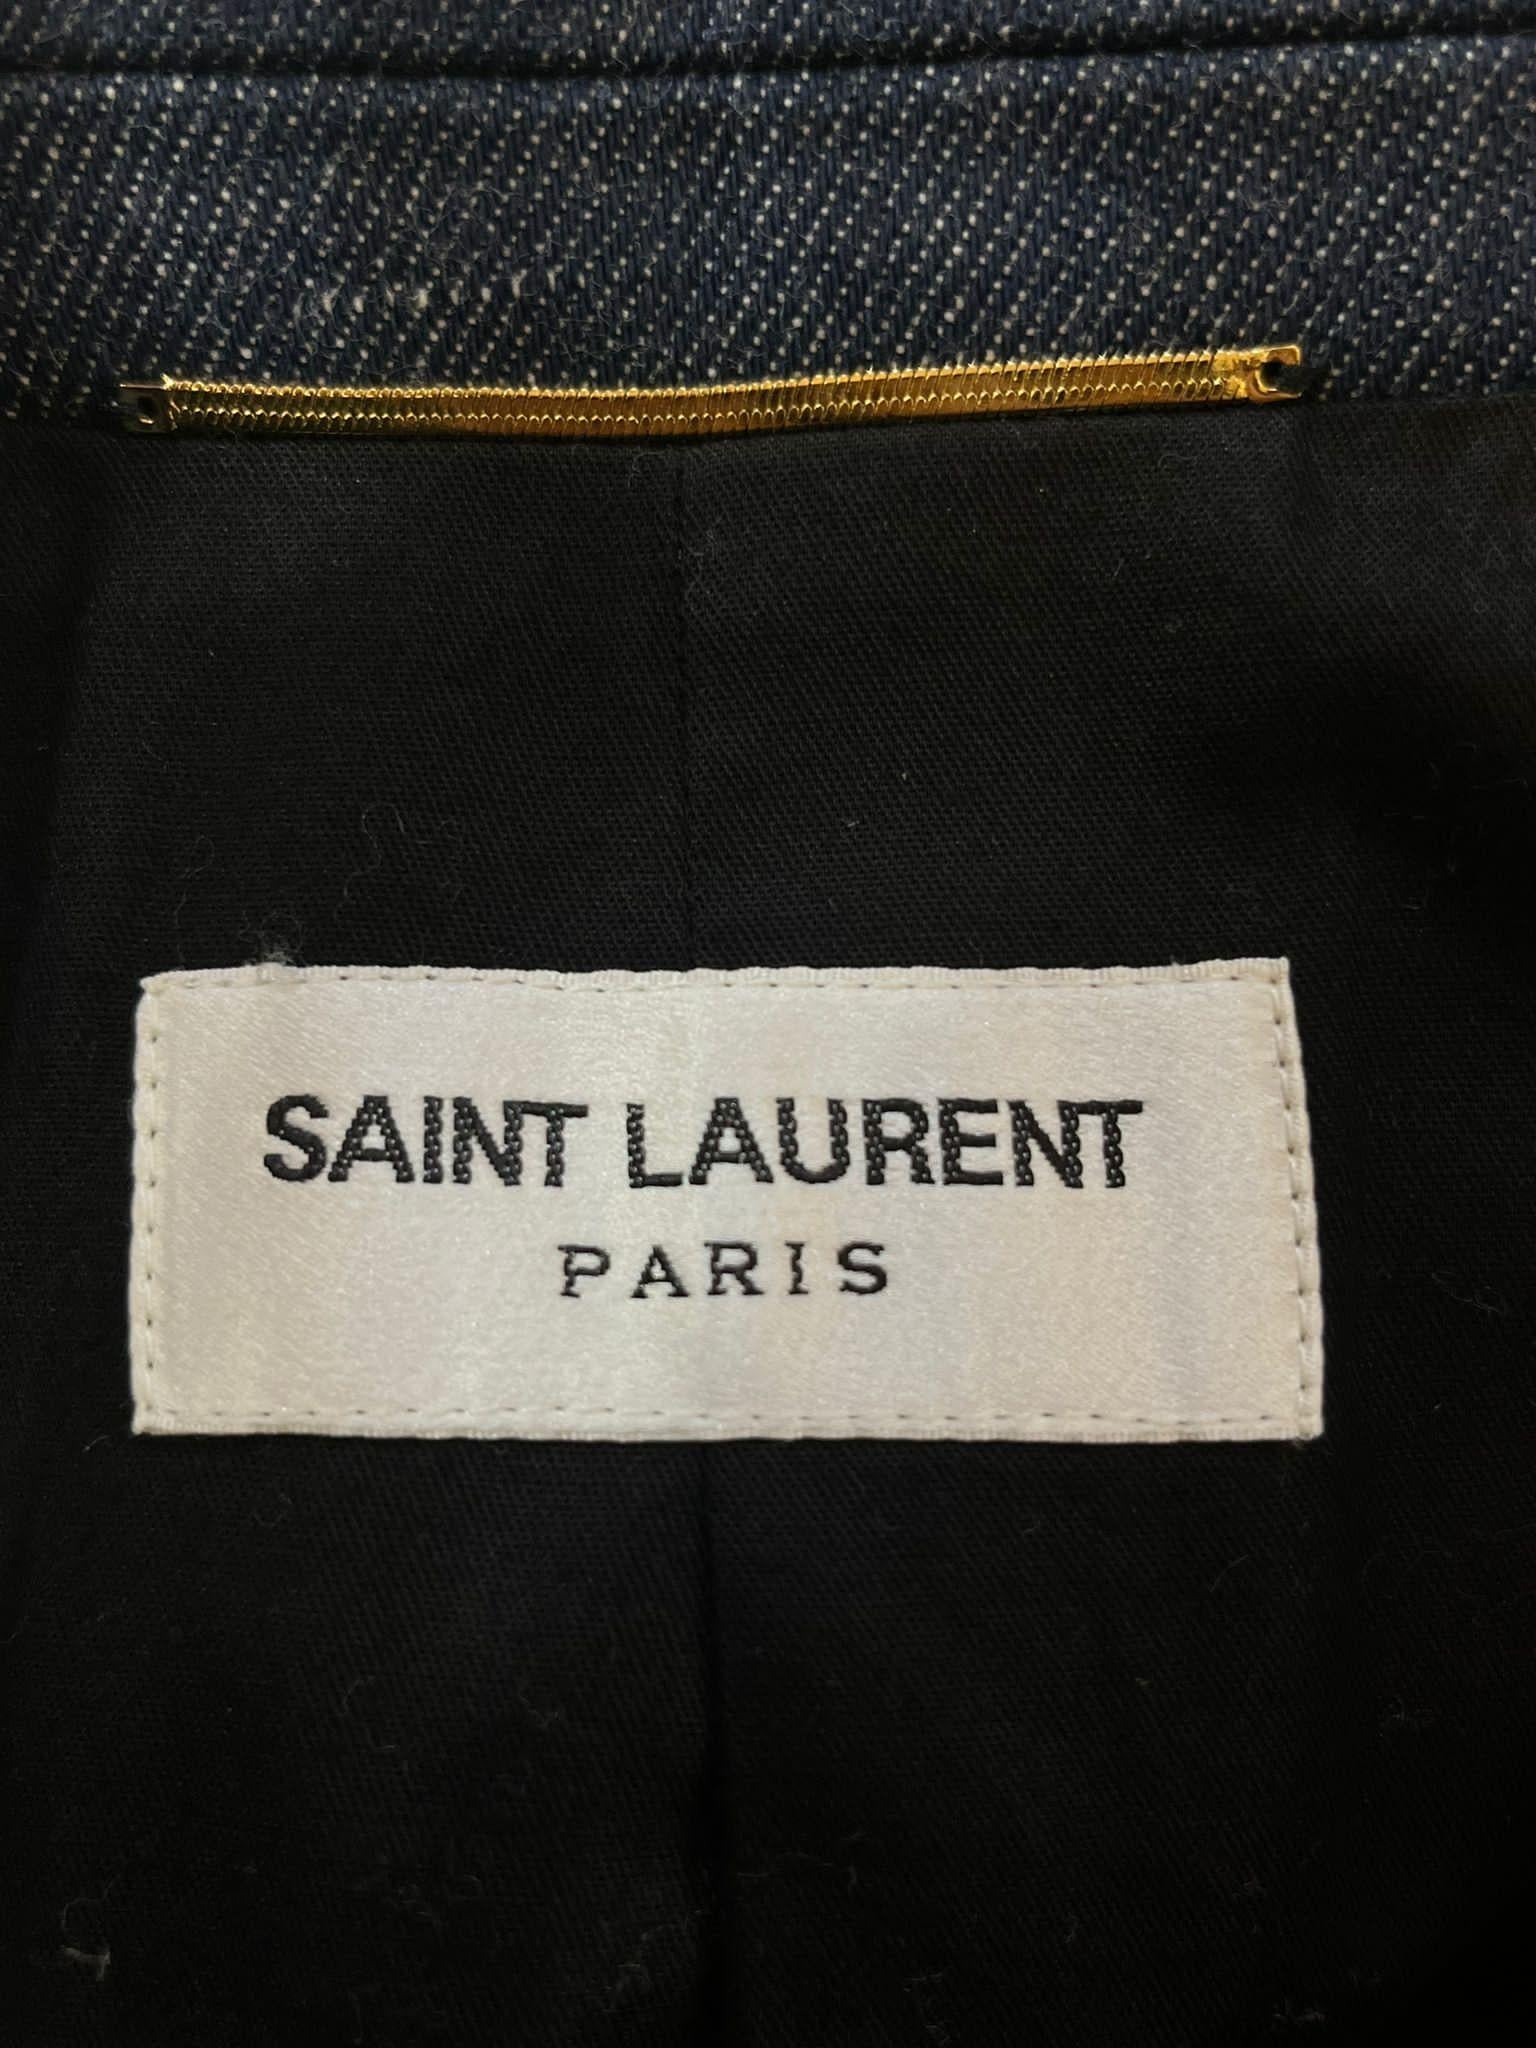 Saint Laurent Denim Jacket & Trousers For Sale 1